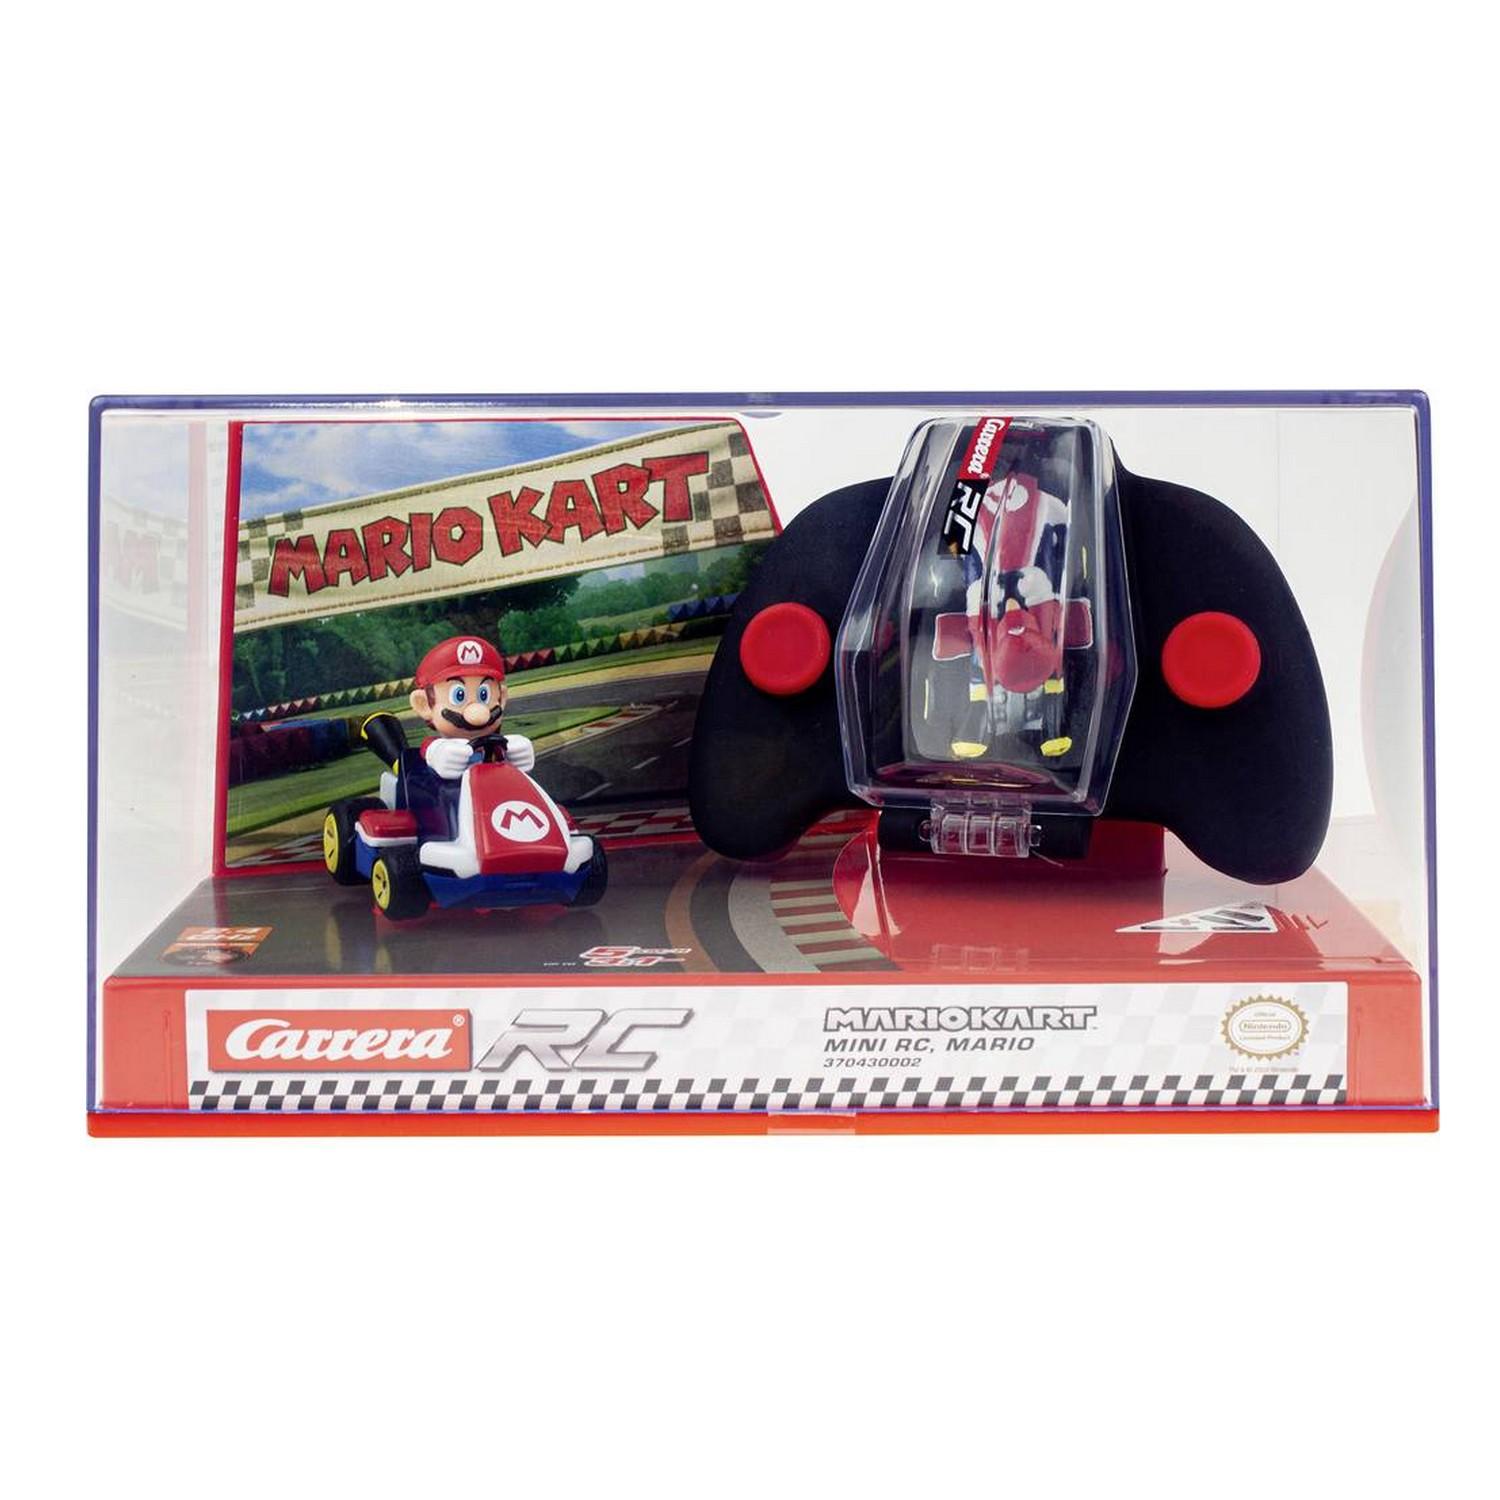 Le plus petit Mariokart Radiocommandé au monde Carrera RC Mini Mario Kart  le Test en Français 